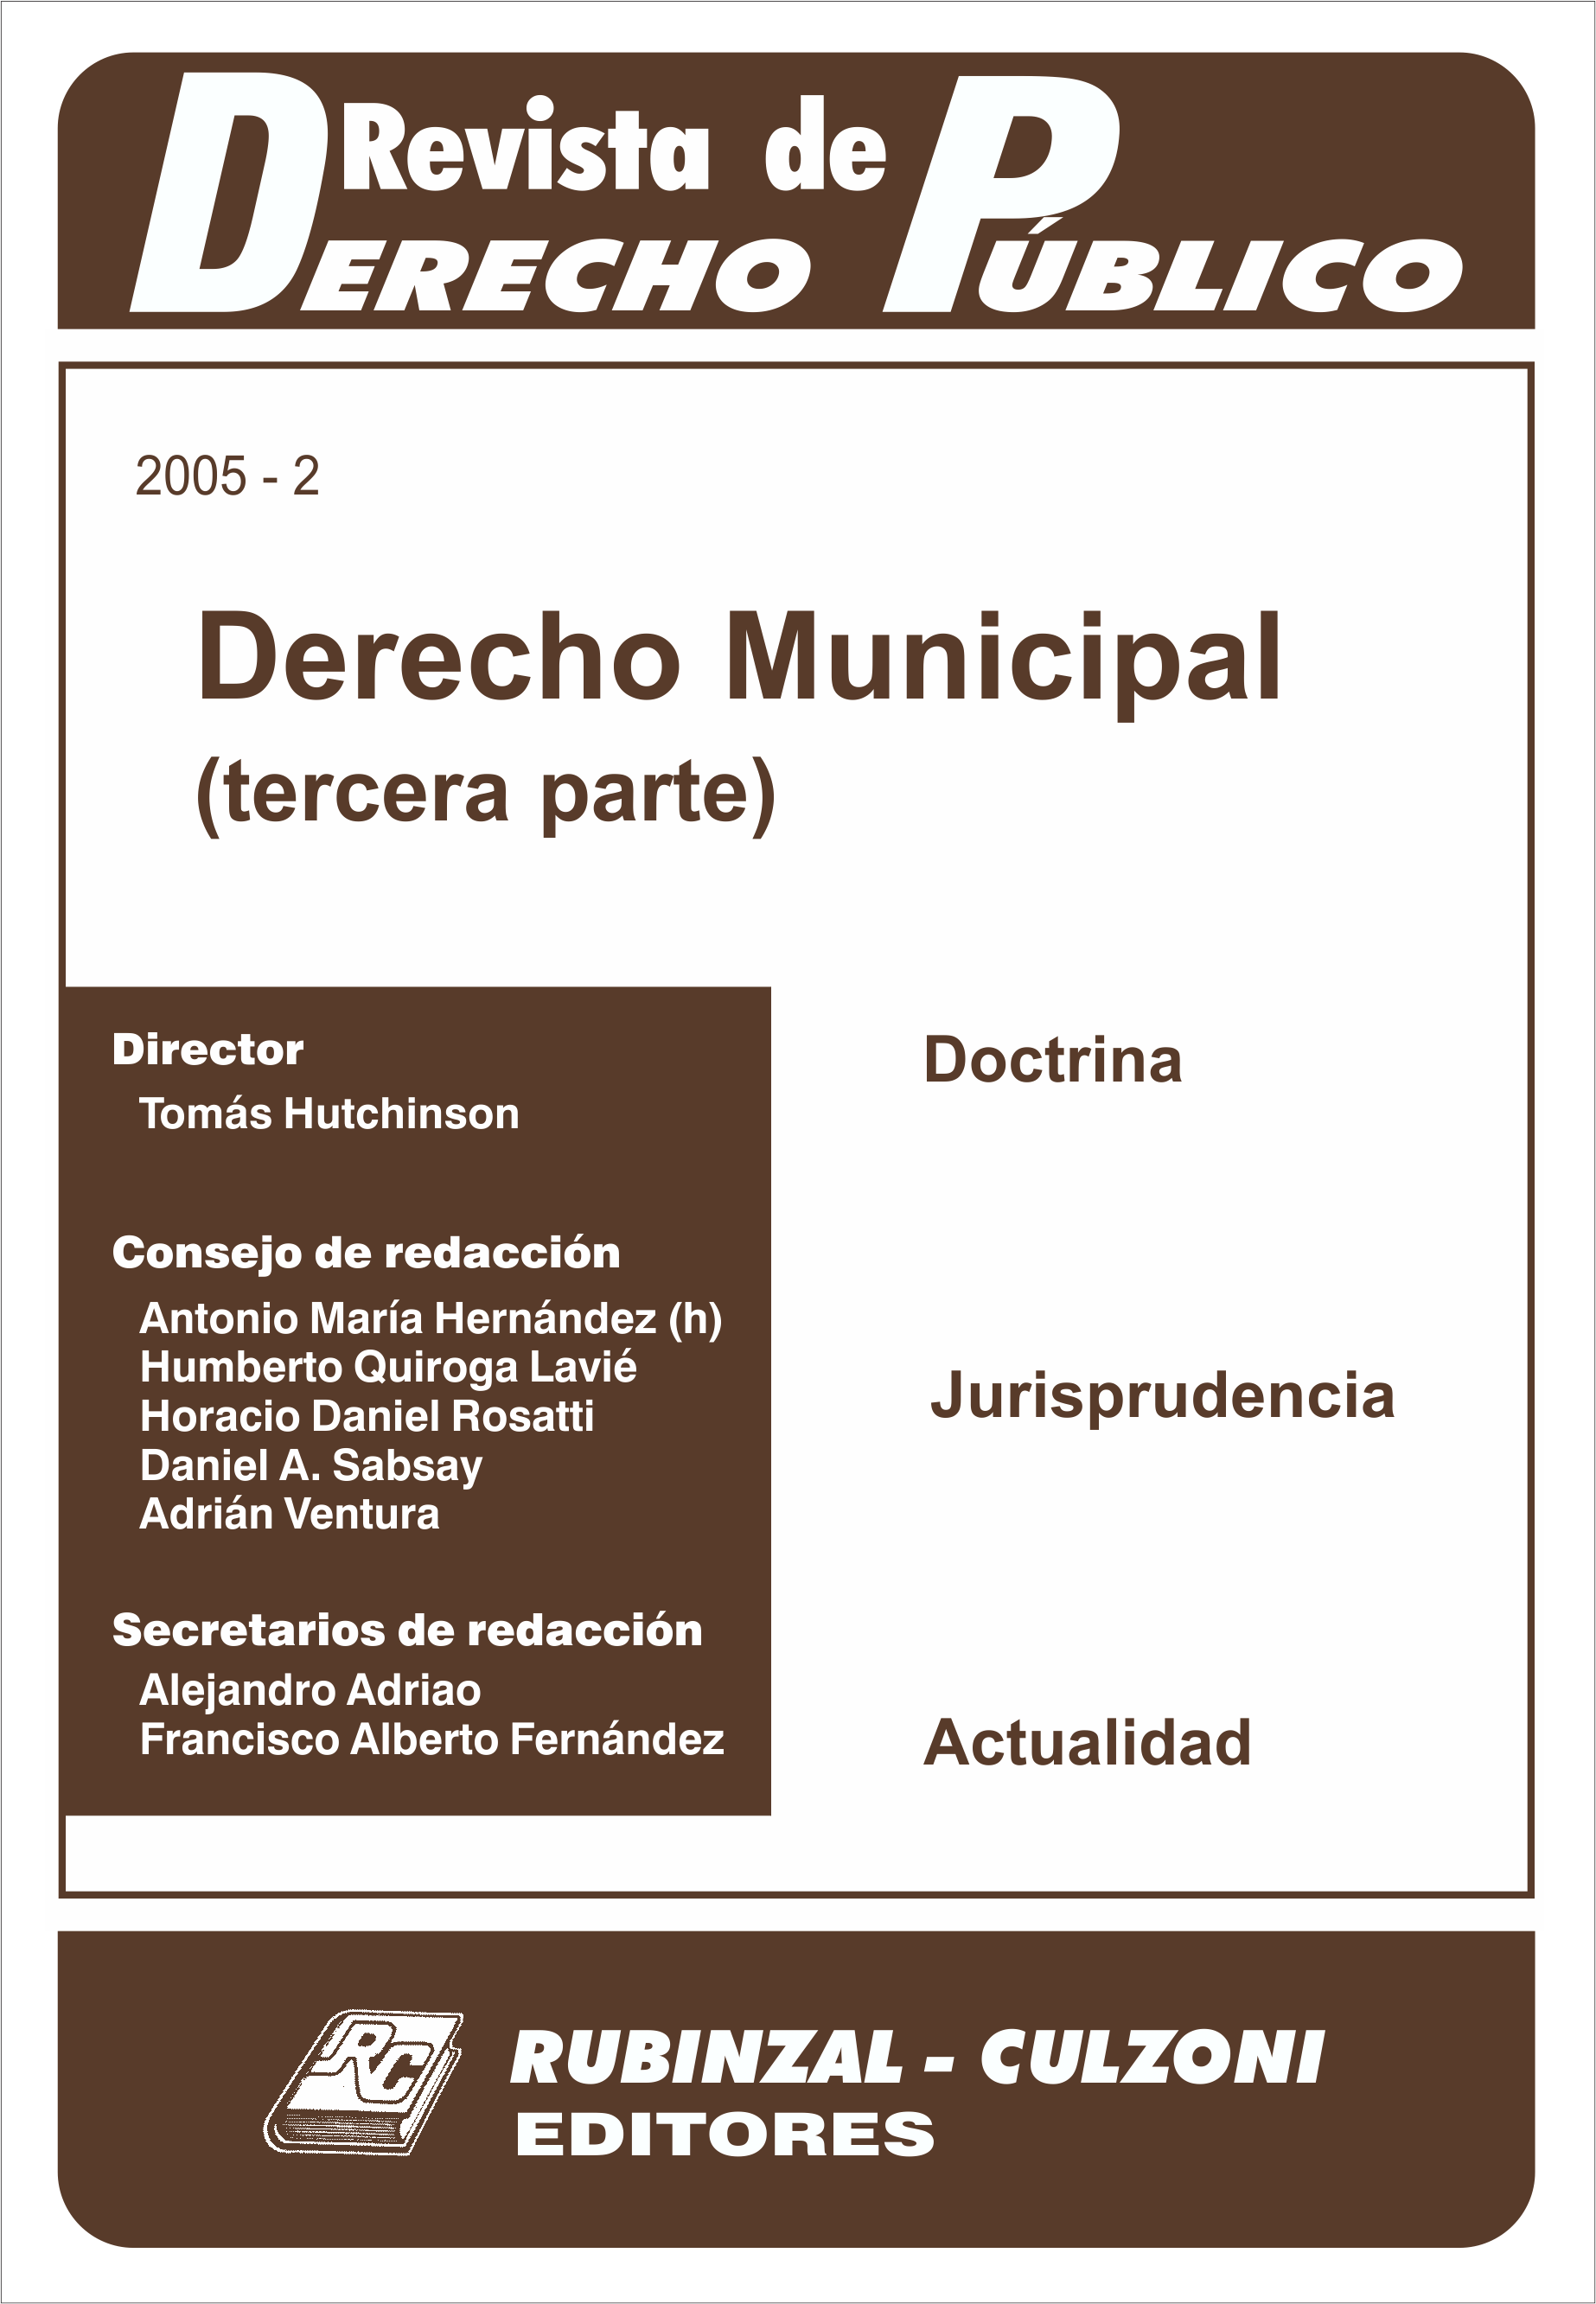 Revista de Derecho Público - Derecho Municipal (Tercera parte).